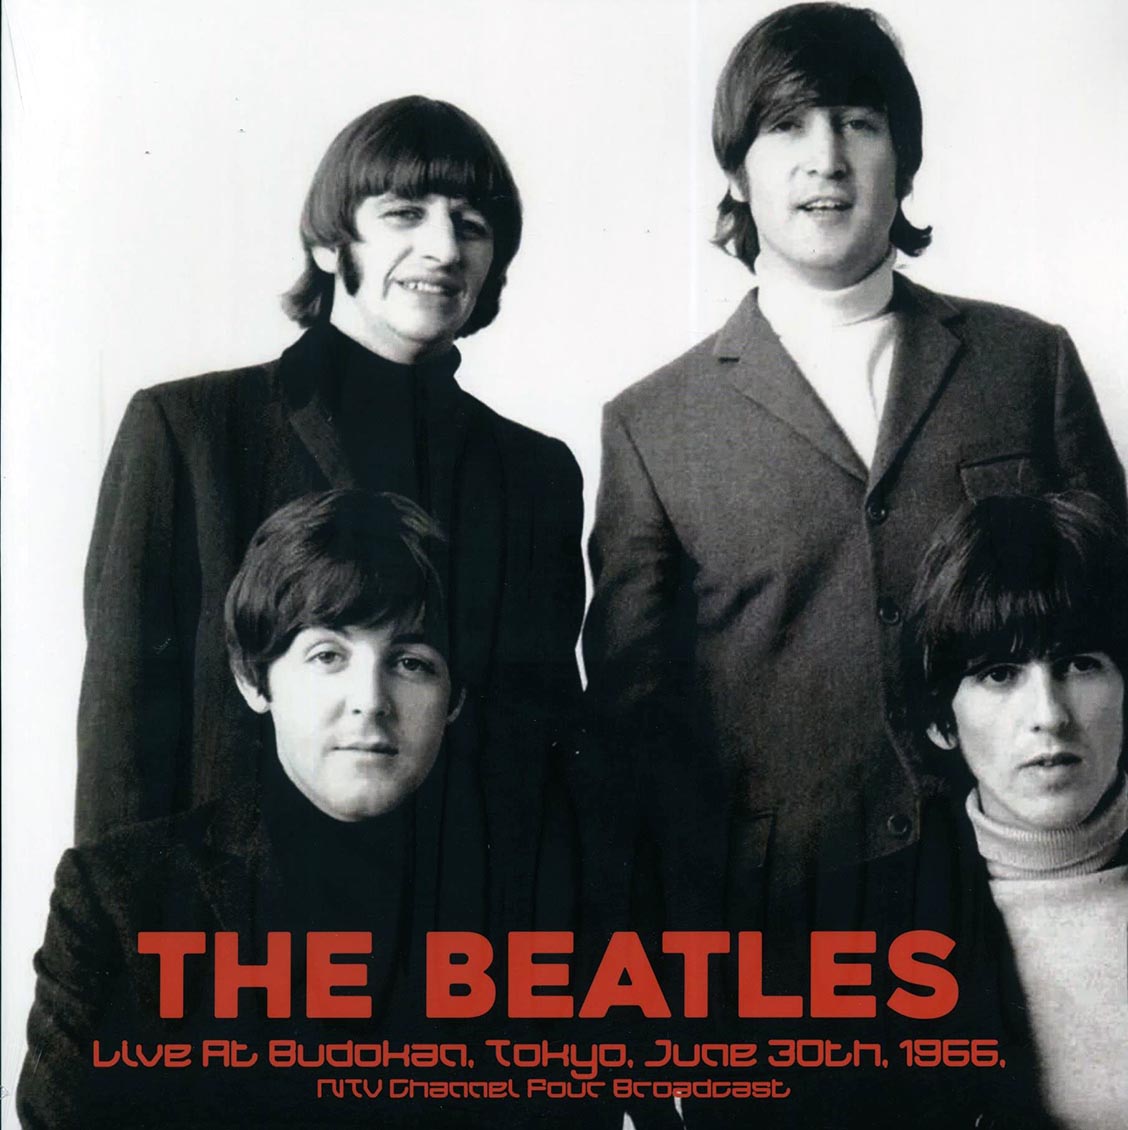 The Beatles - Live At Budokan, Tokyo, June 30th 1966 - Vinyl LP